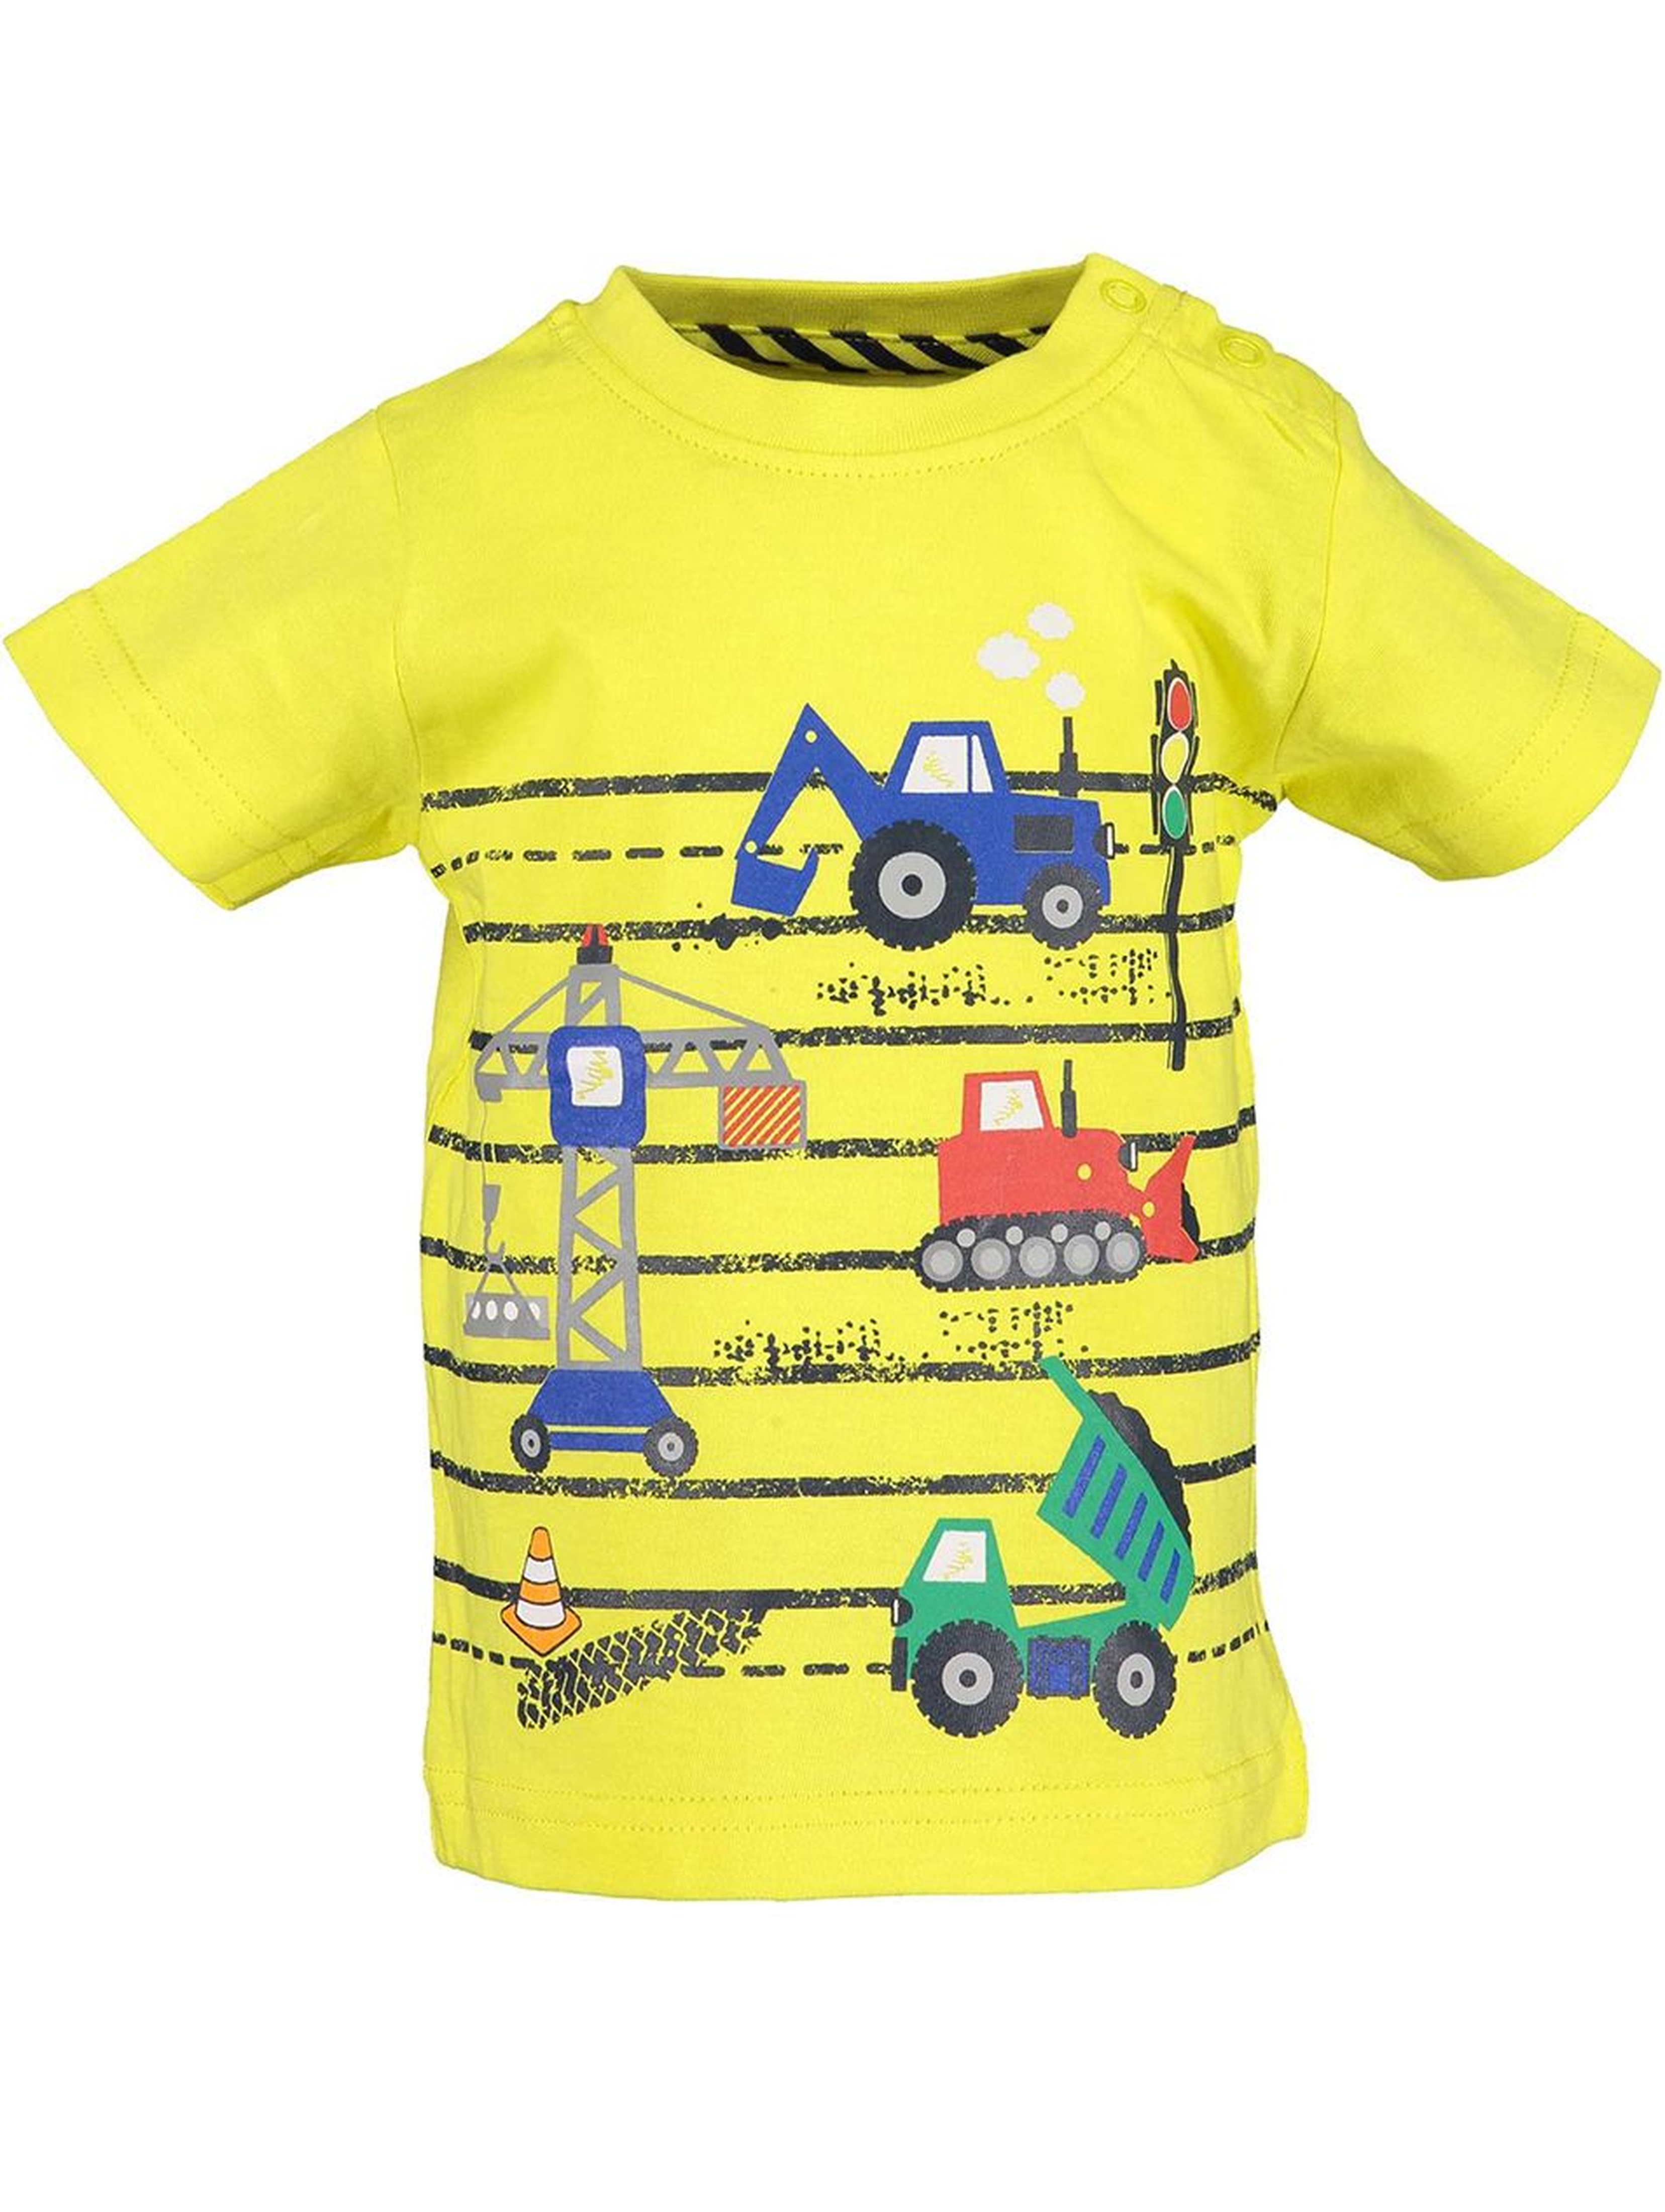 Koszulka chłopięca żółta z pojazdami budowlanymi